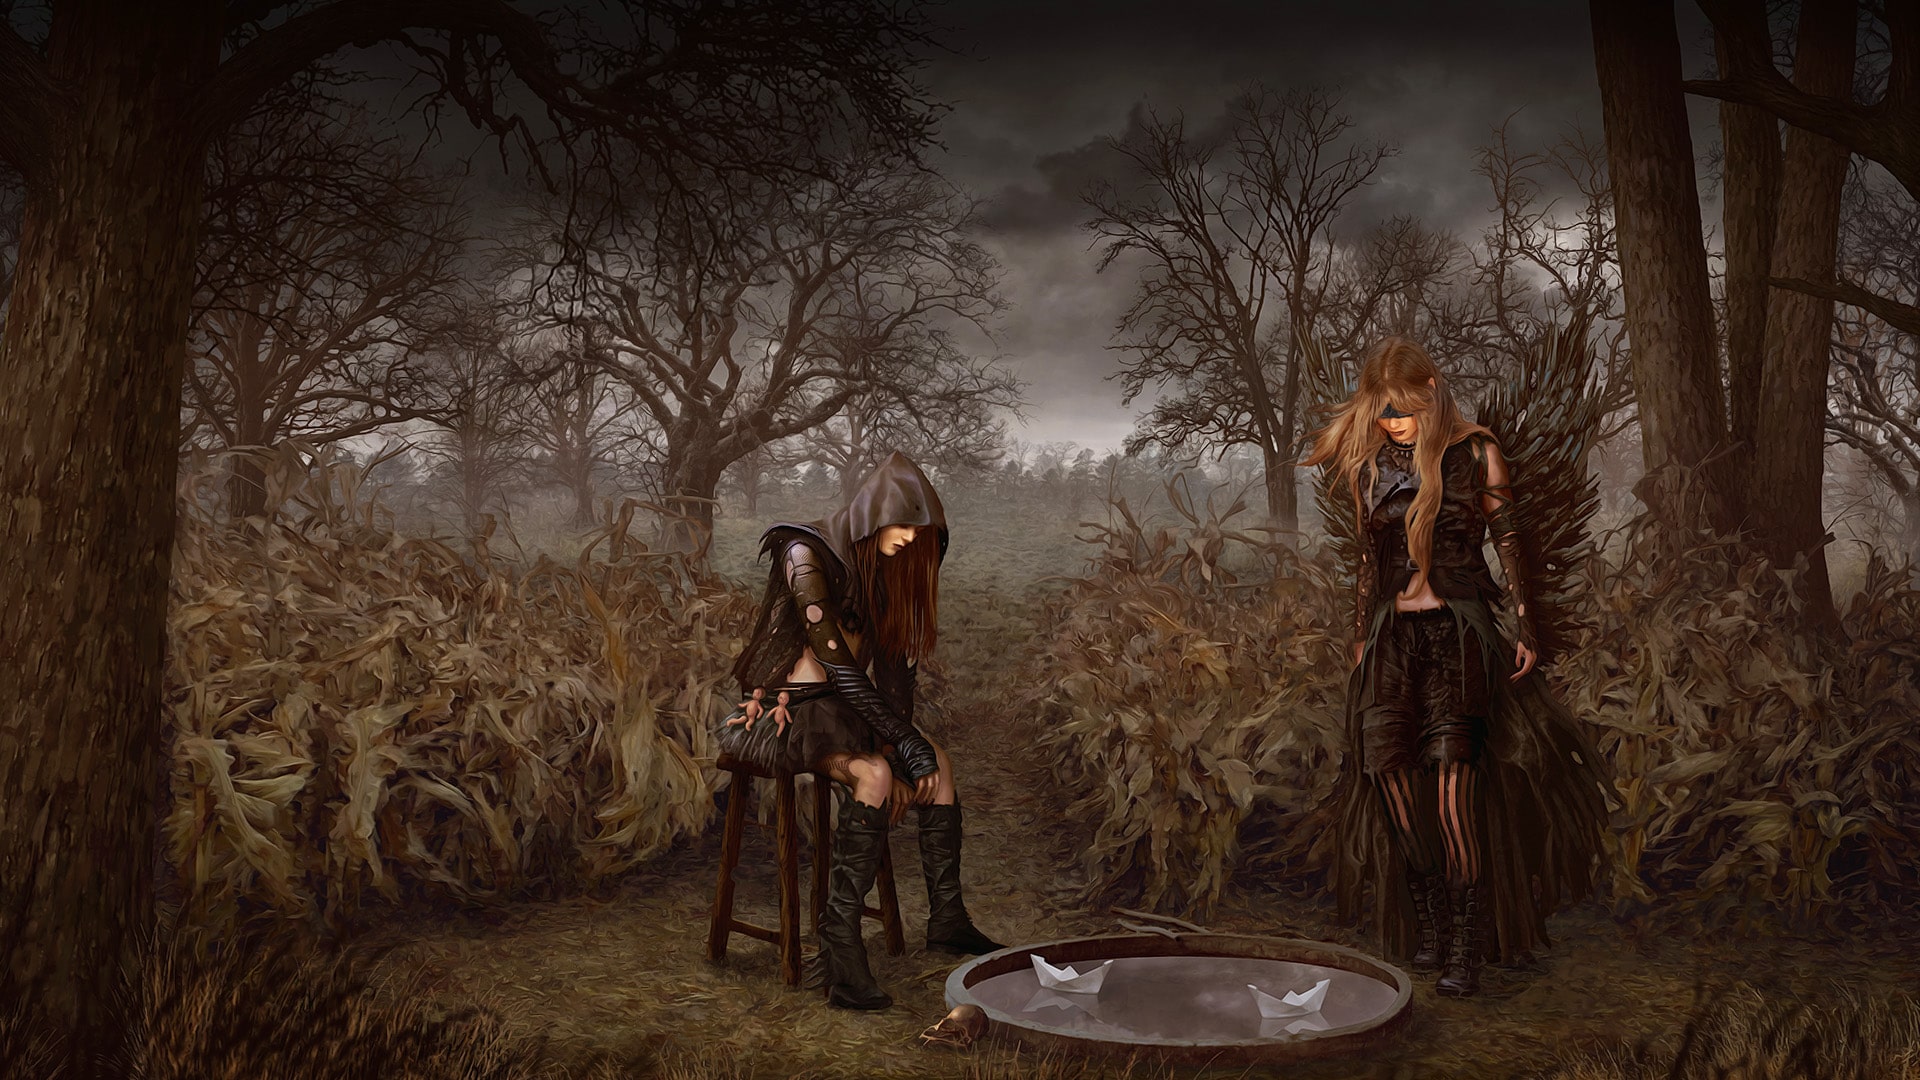 Screenshot aus dem Spiel Tormentum 2. Zu sehen sind zwei Frauen, die auf einer düsteren Lichtung Papierbötchen in einem kleinen Wasserbecken fahren lassen. 